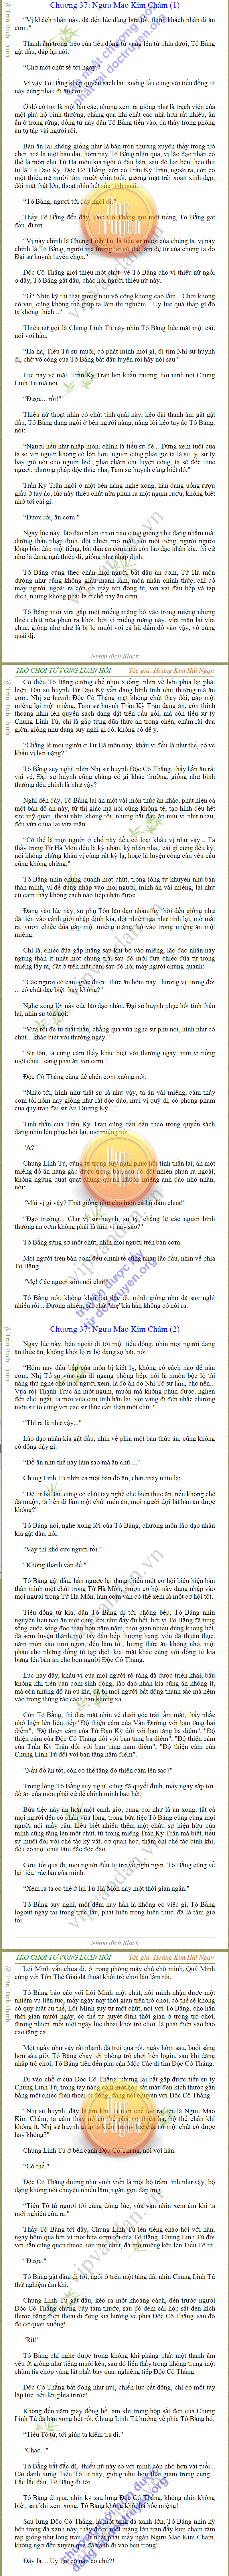 TRÒ CHƠI TỬ VONG LUÂN HỒI - Hoàng Kim Hải Ngạn - chương 37